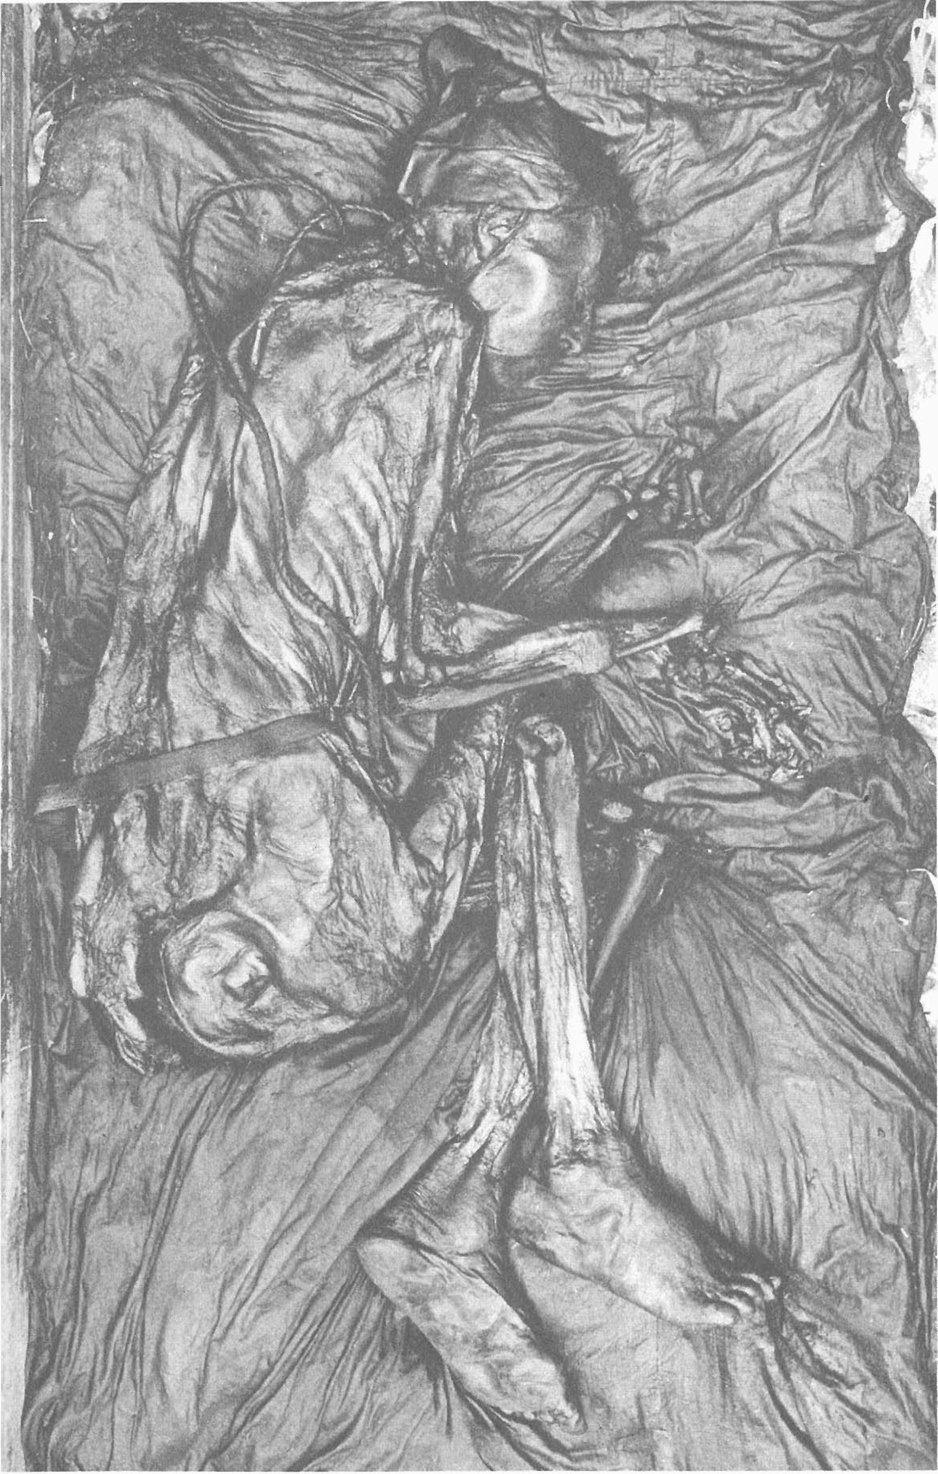 26. Человек, обнаруженный в 1950 году в торфяном болоте в Толлунде, Северная Ютландия. Он изображен лежащим в той же позе, в какой был найден. Он одет в плащ, на голове — заостренная кожаная шапка. Фотография была любезно предоставлена Национальным музеем Копенгагена